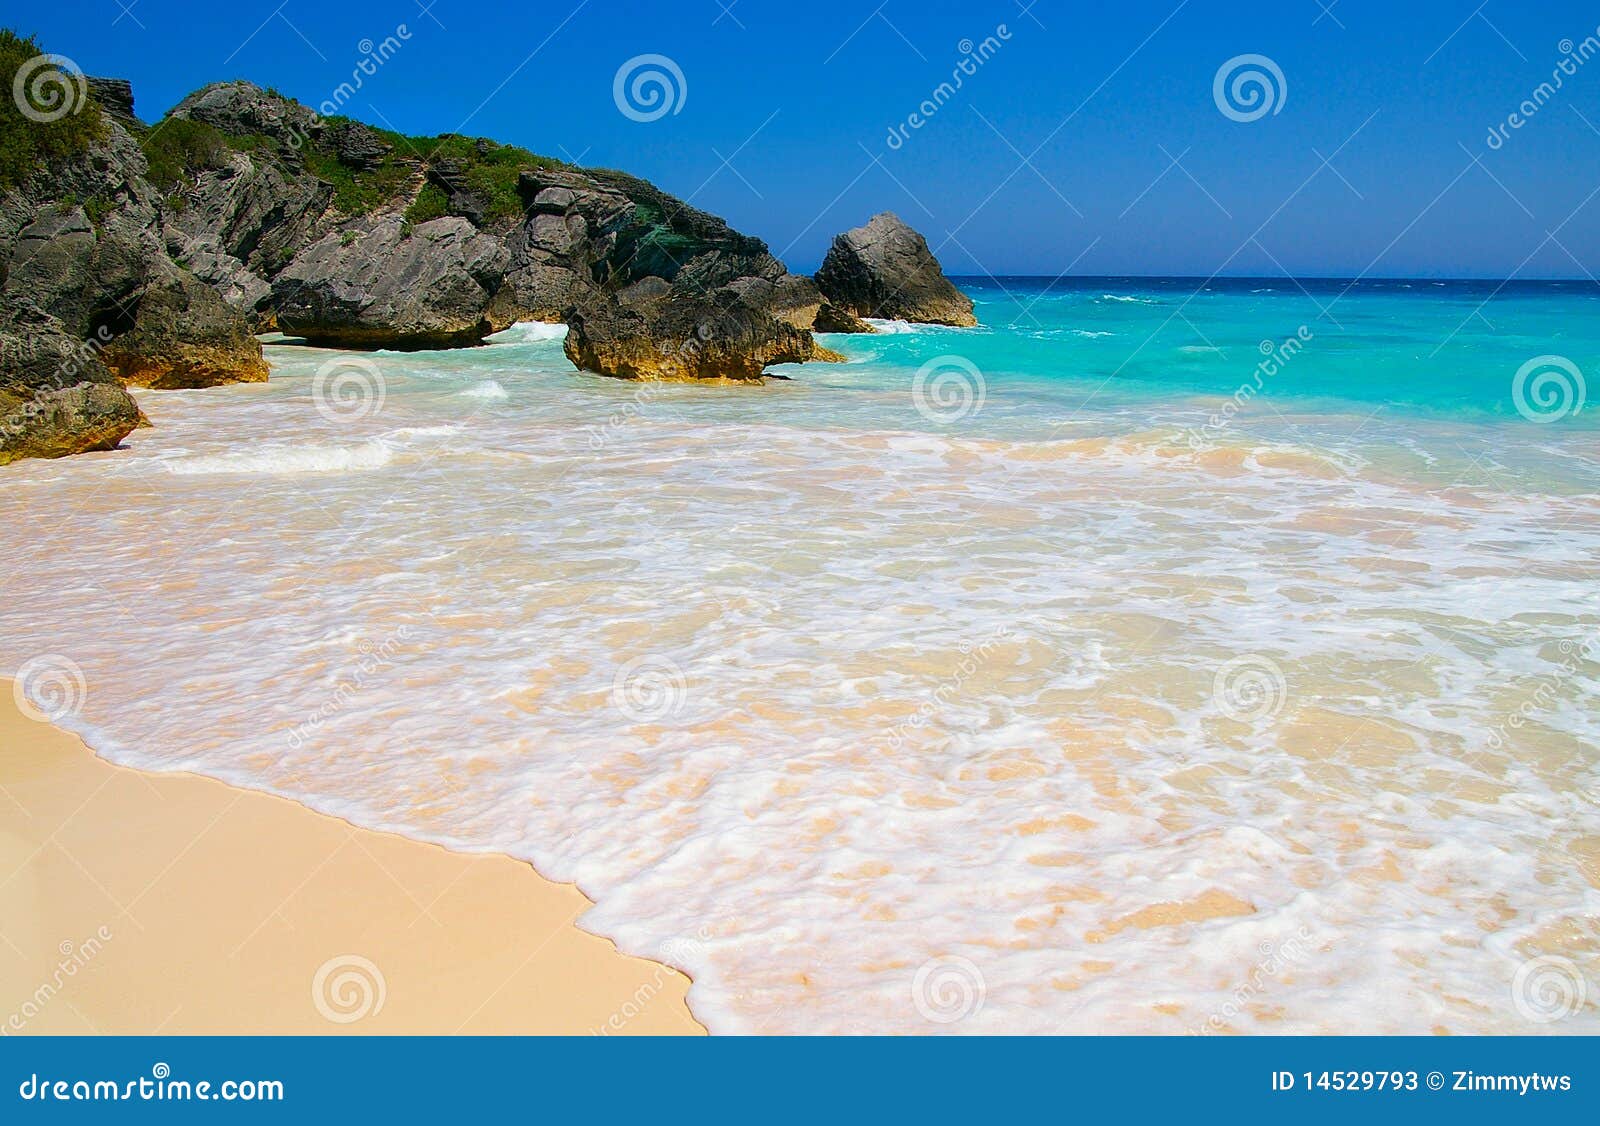 Stock Photos: Beautiful tropical beach